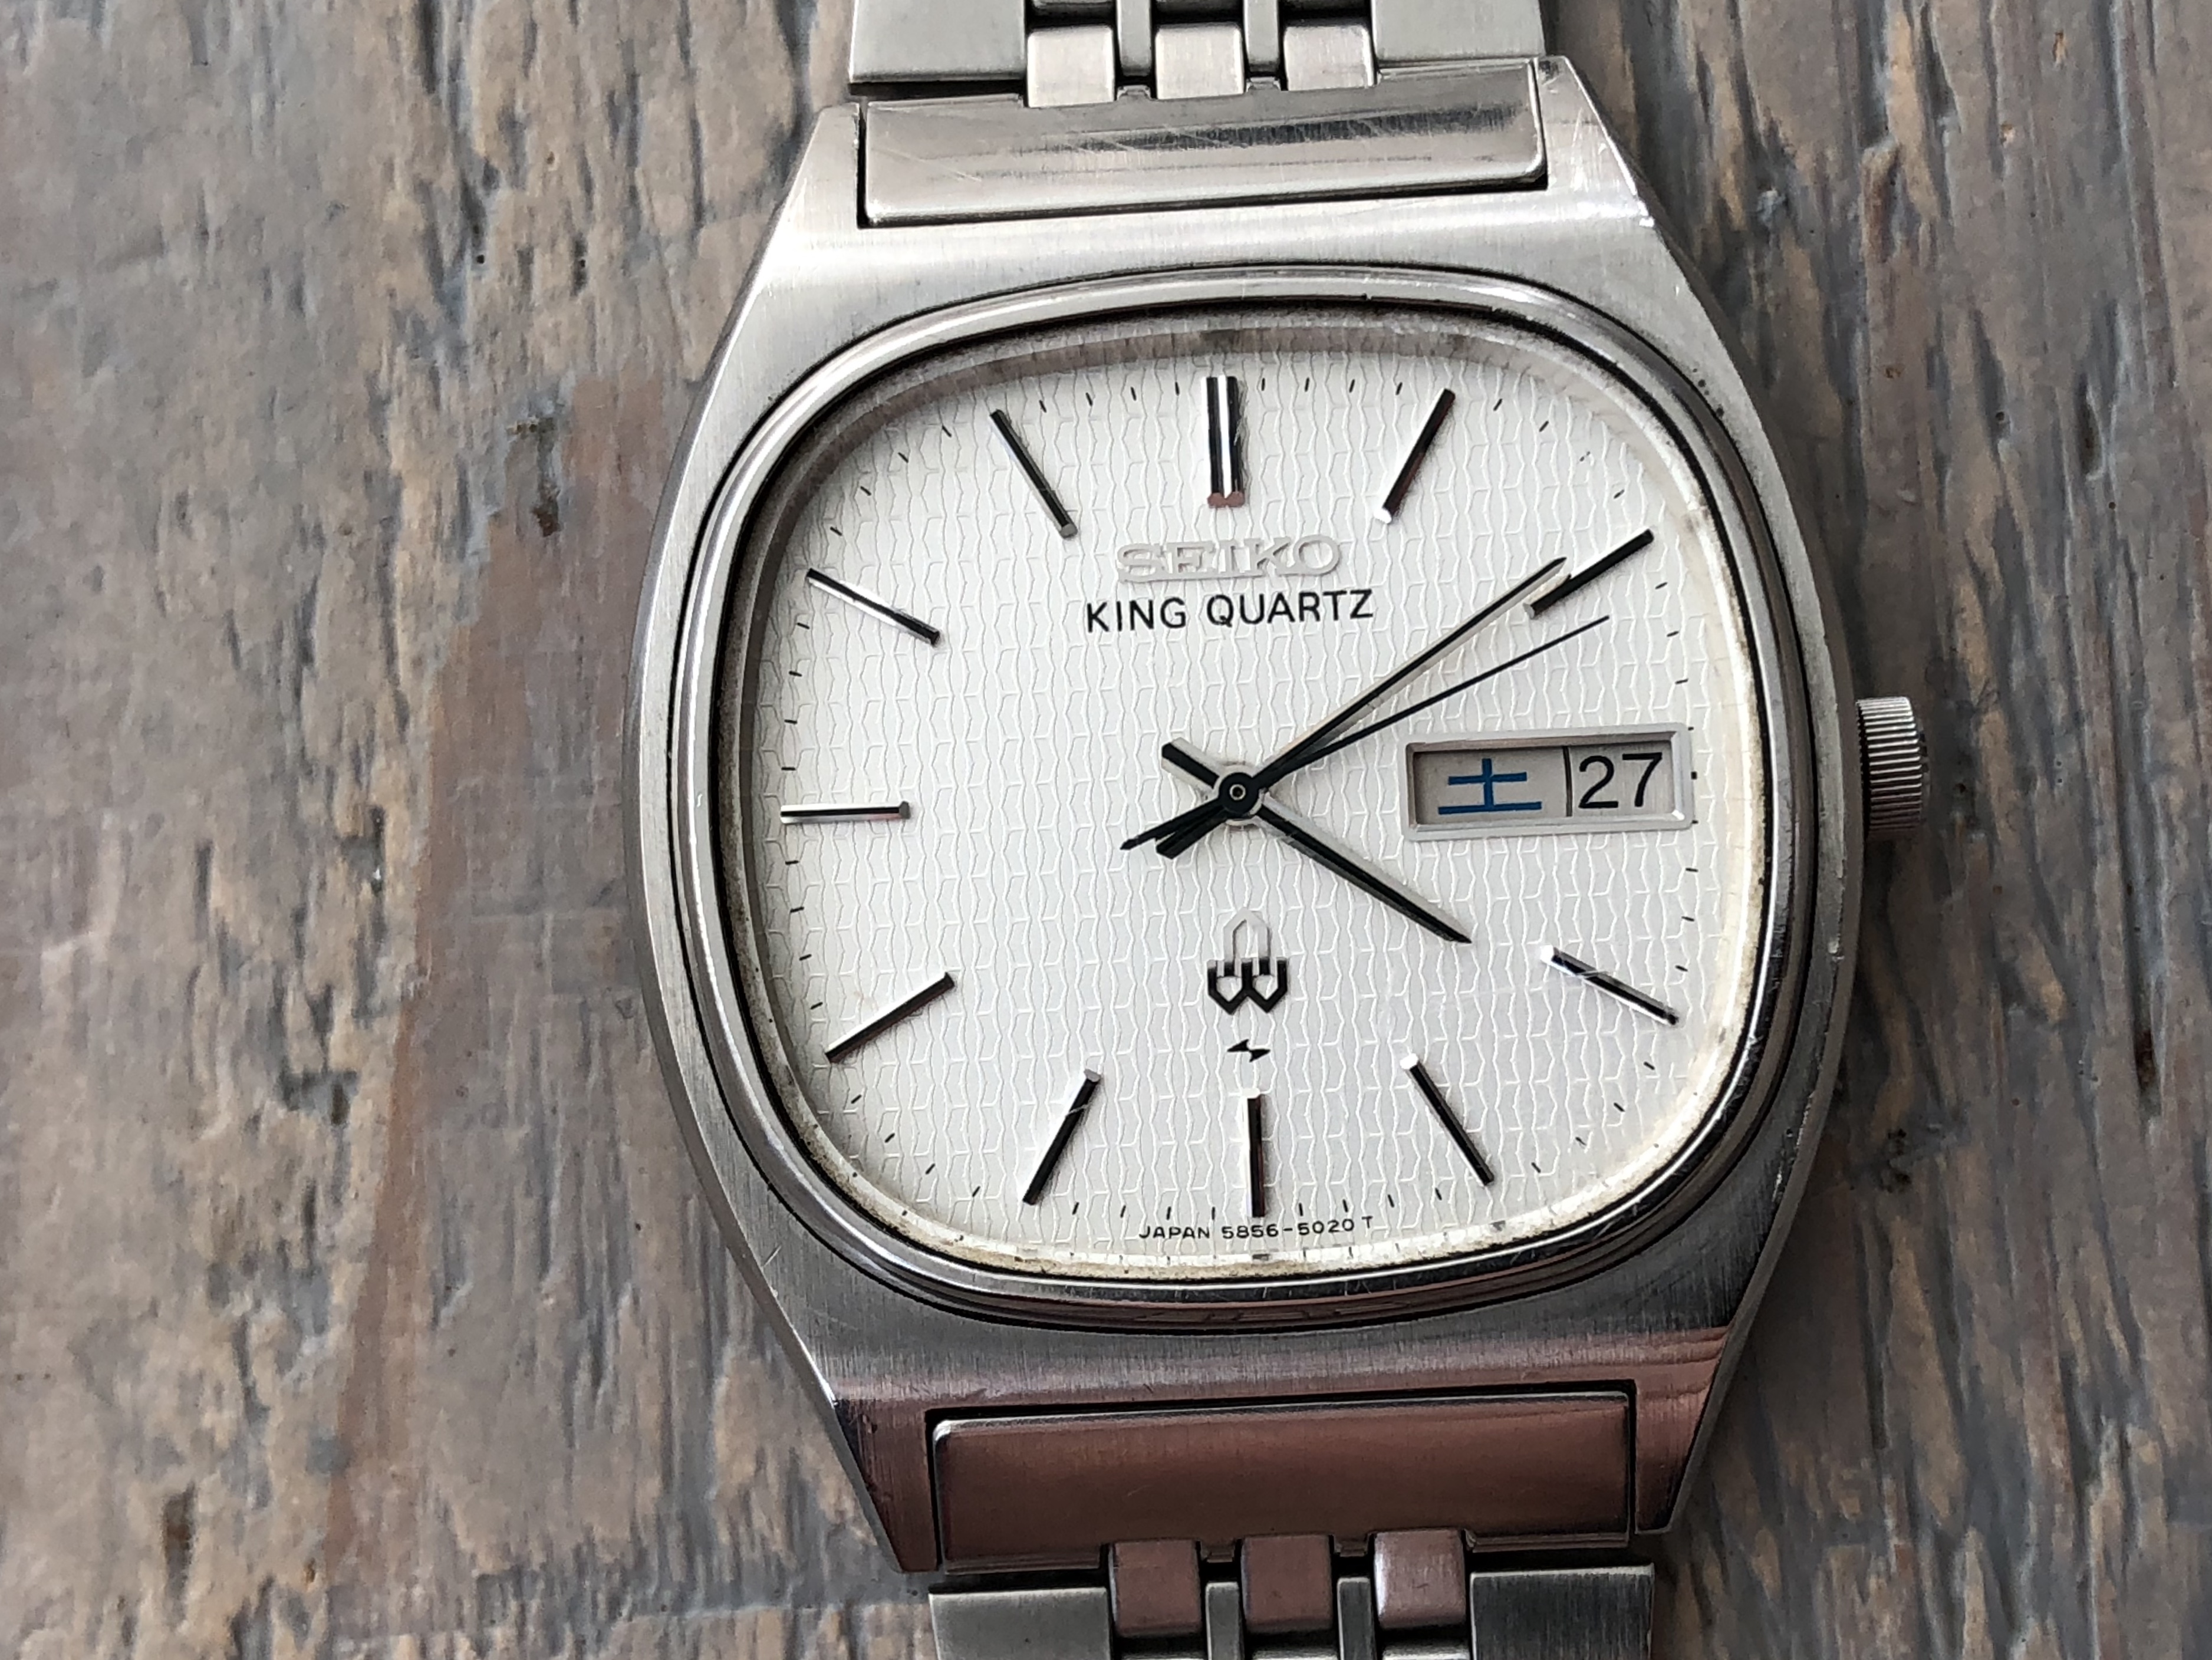 型番は5856-8020ですSEIKO KING QUARTZ 5856-8020 - 腕時計(アナログ)